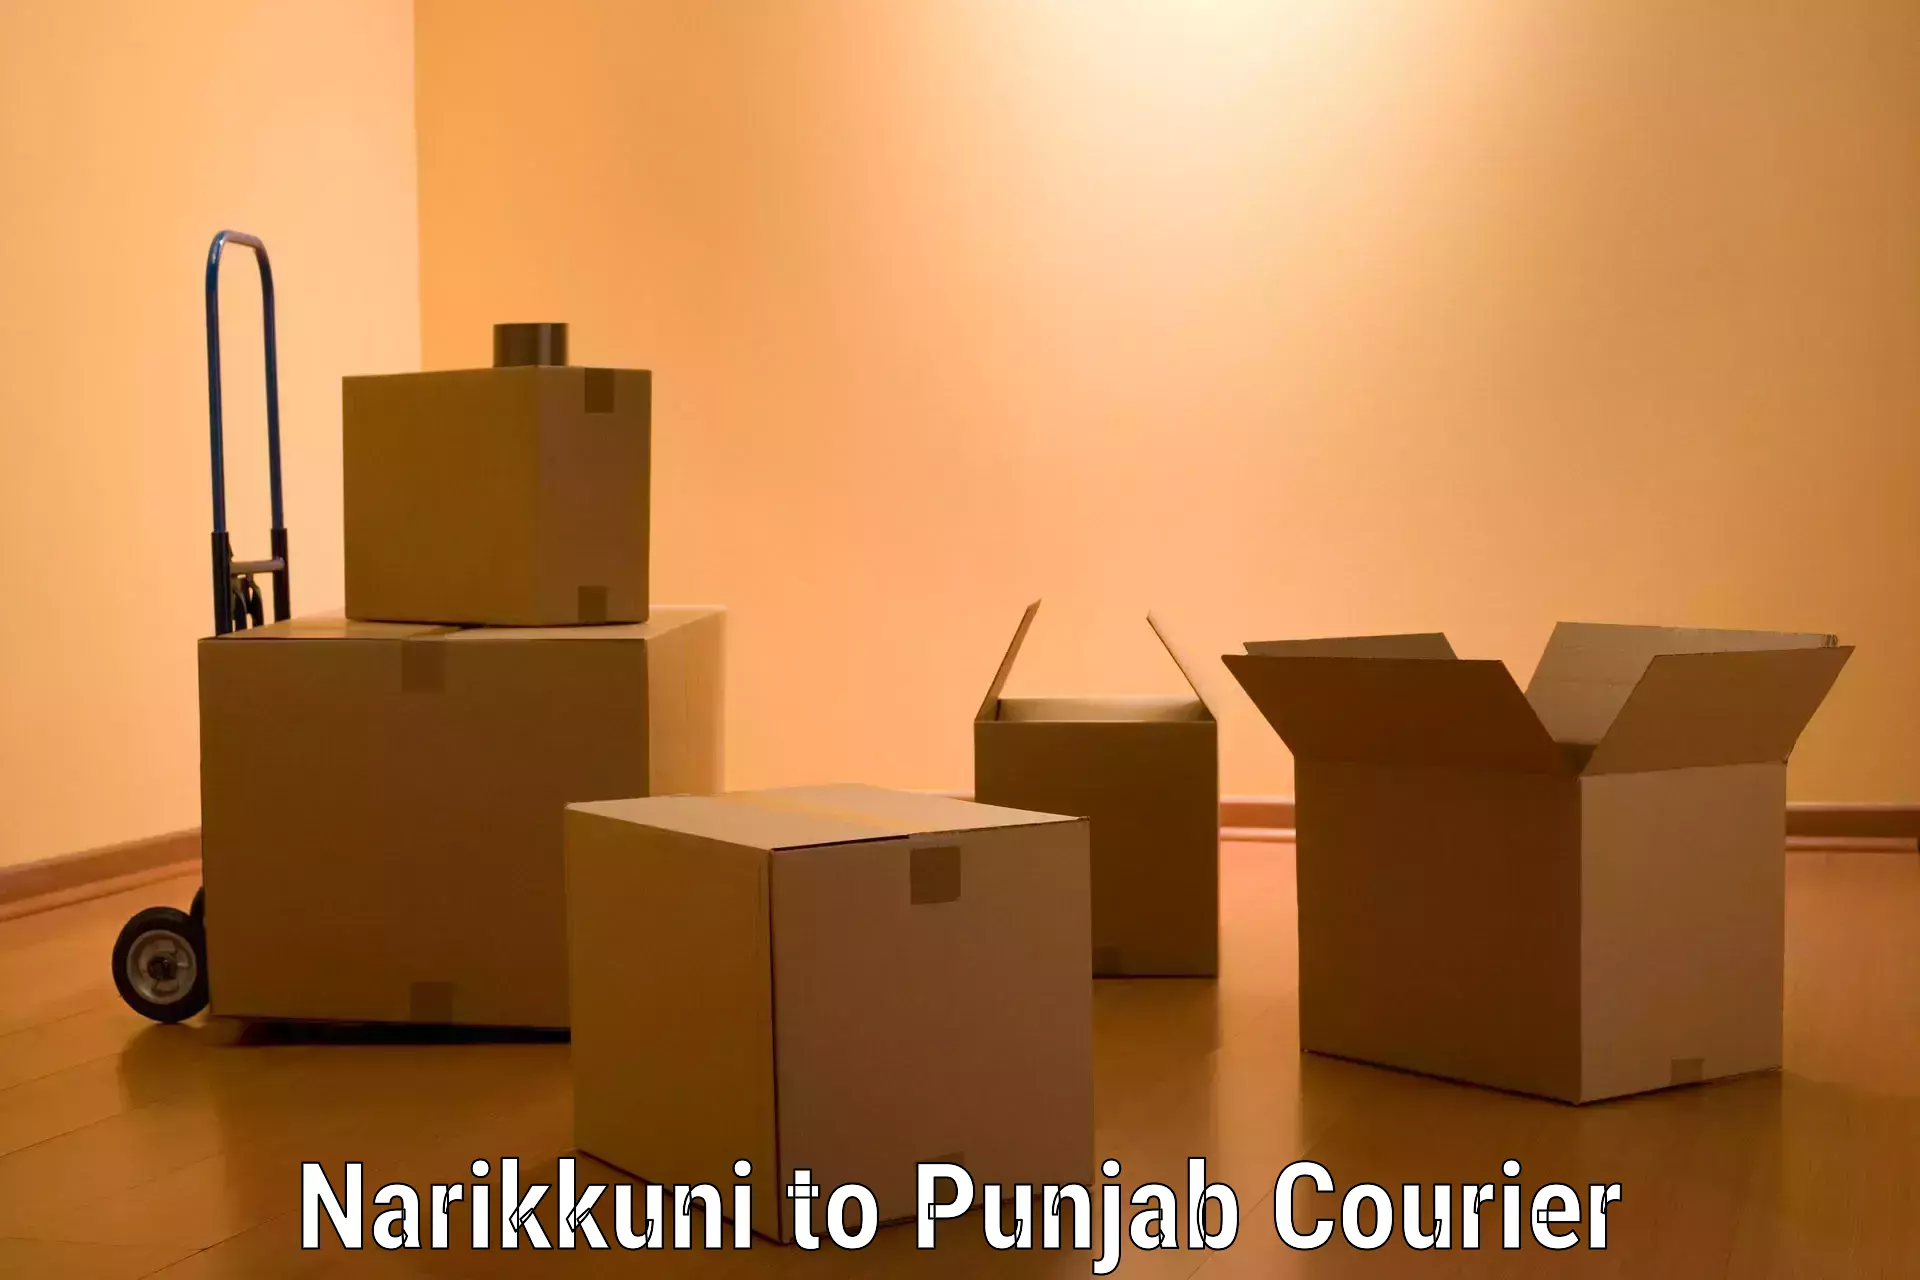 High-quality moving services Narikkuni to Central University of Punjab Bathinda